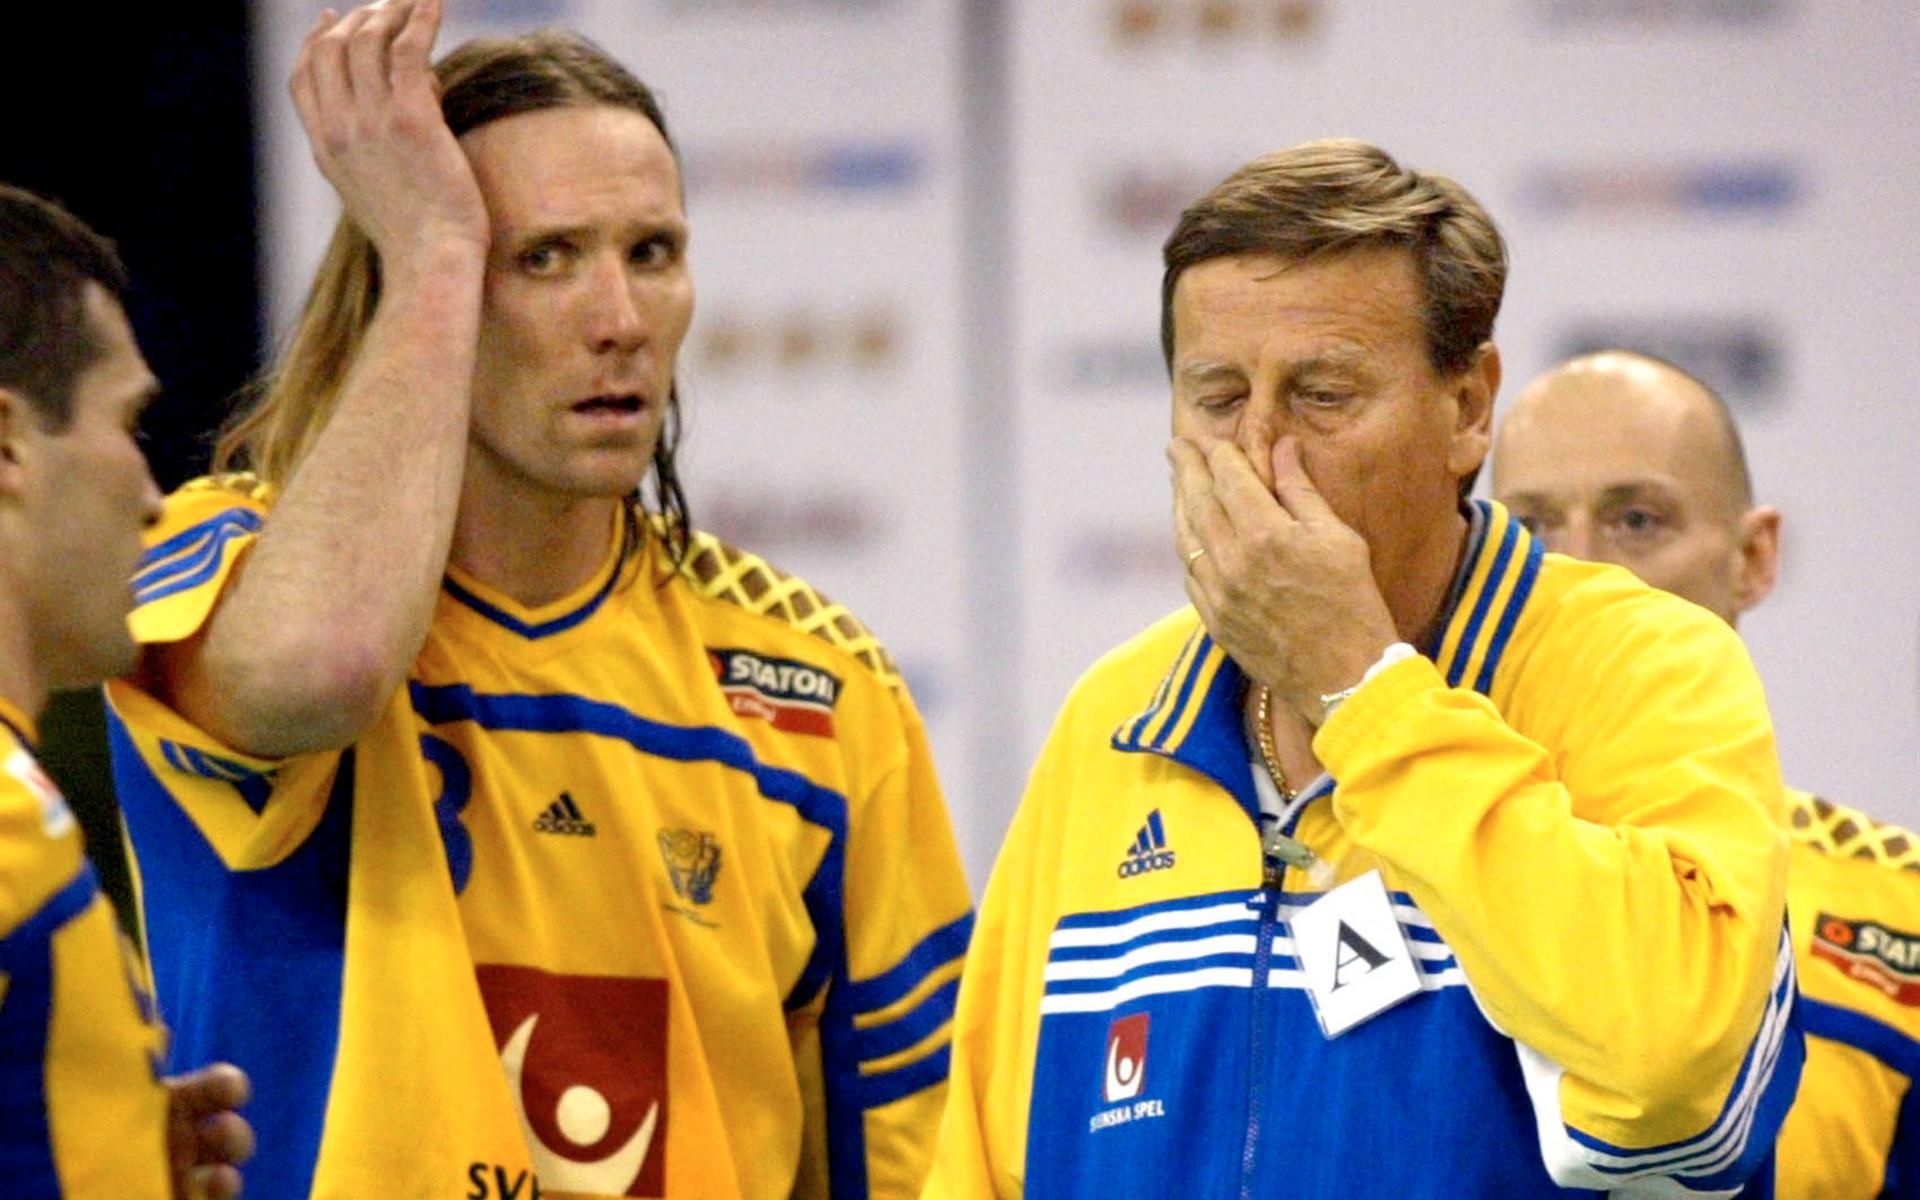 År 1988 tog han över som Sveriges förbundskapten och på den positionen blev han kvar fram till 2004.